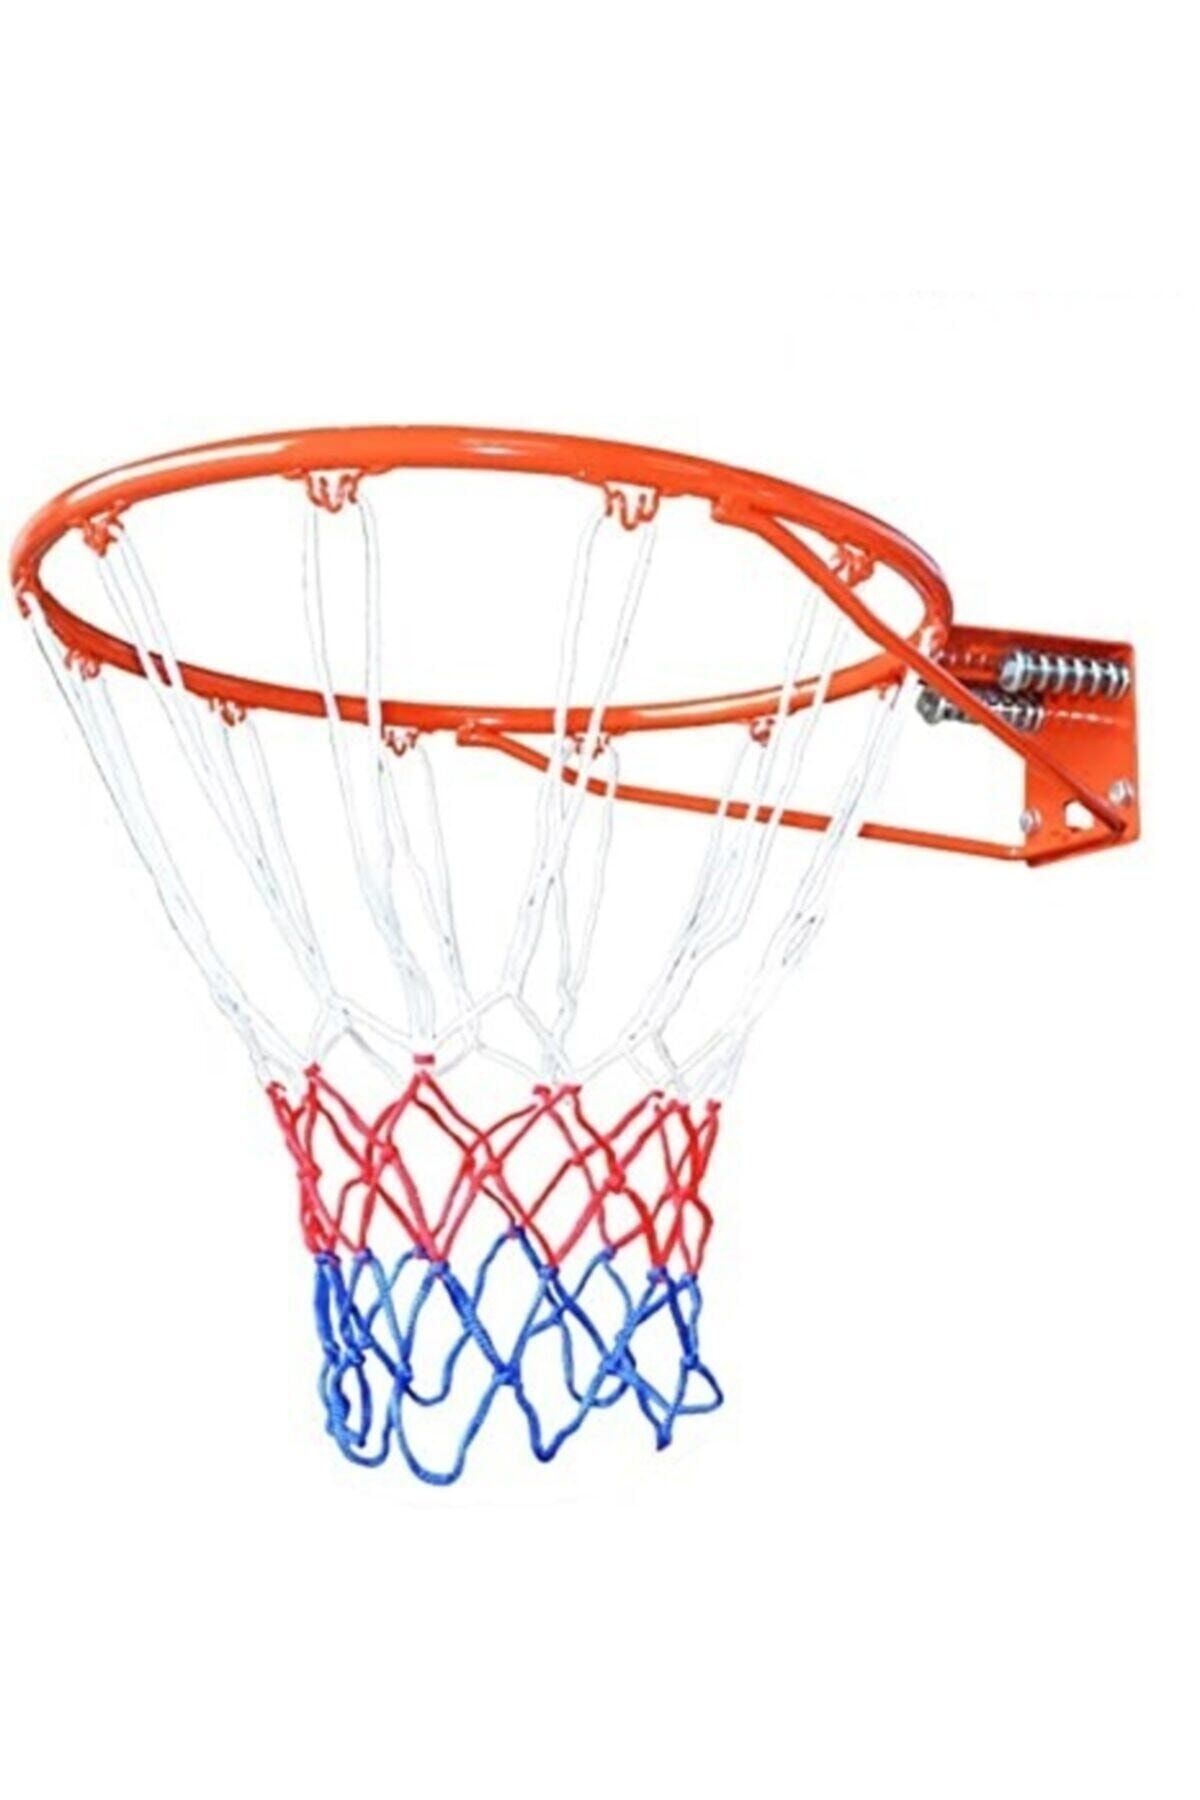 ÖZBEK Spor Basketbol Filesi Kırmızı-mavi-beyaz Tek (1 Adet)